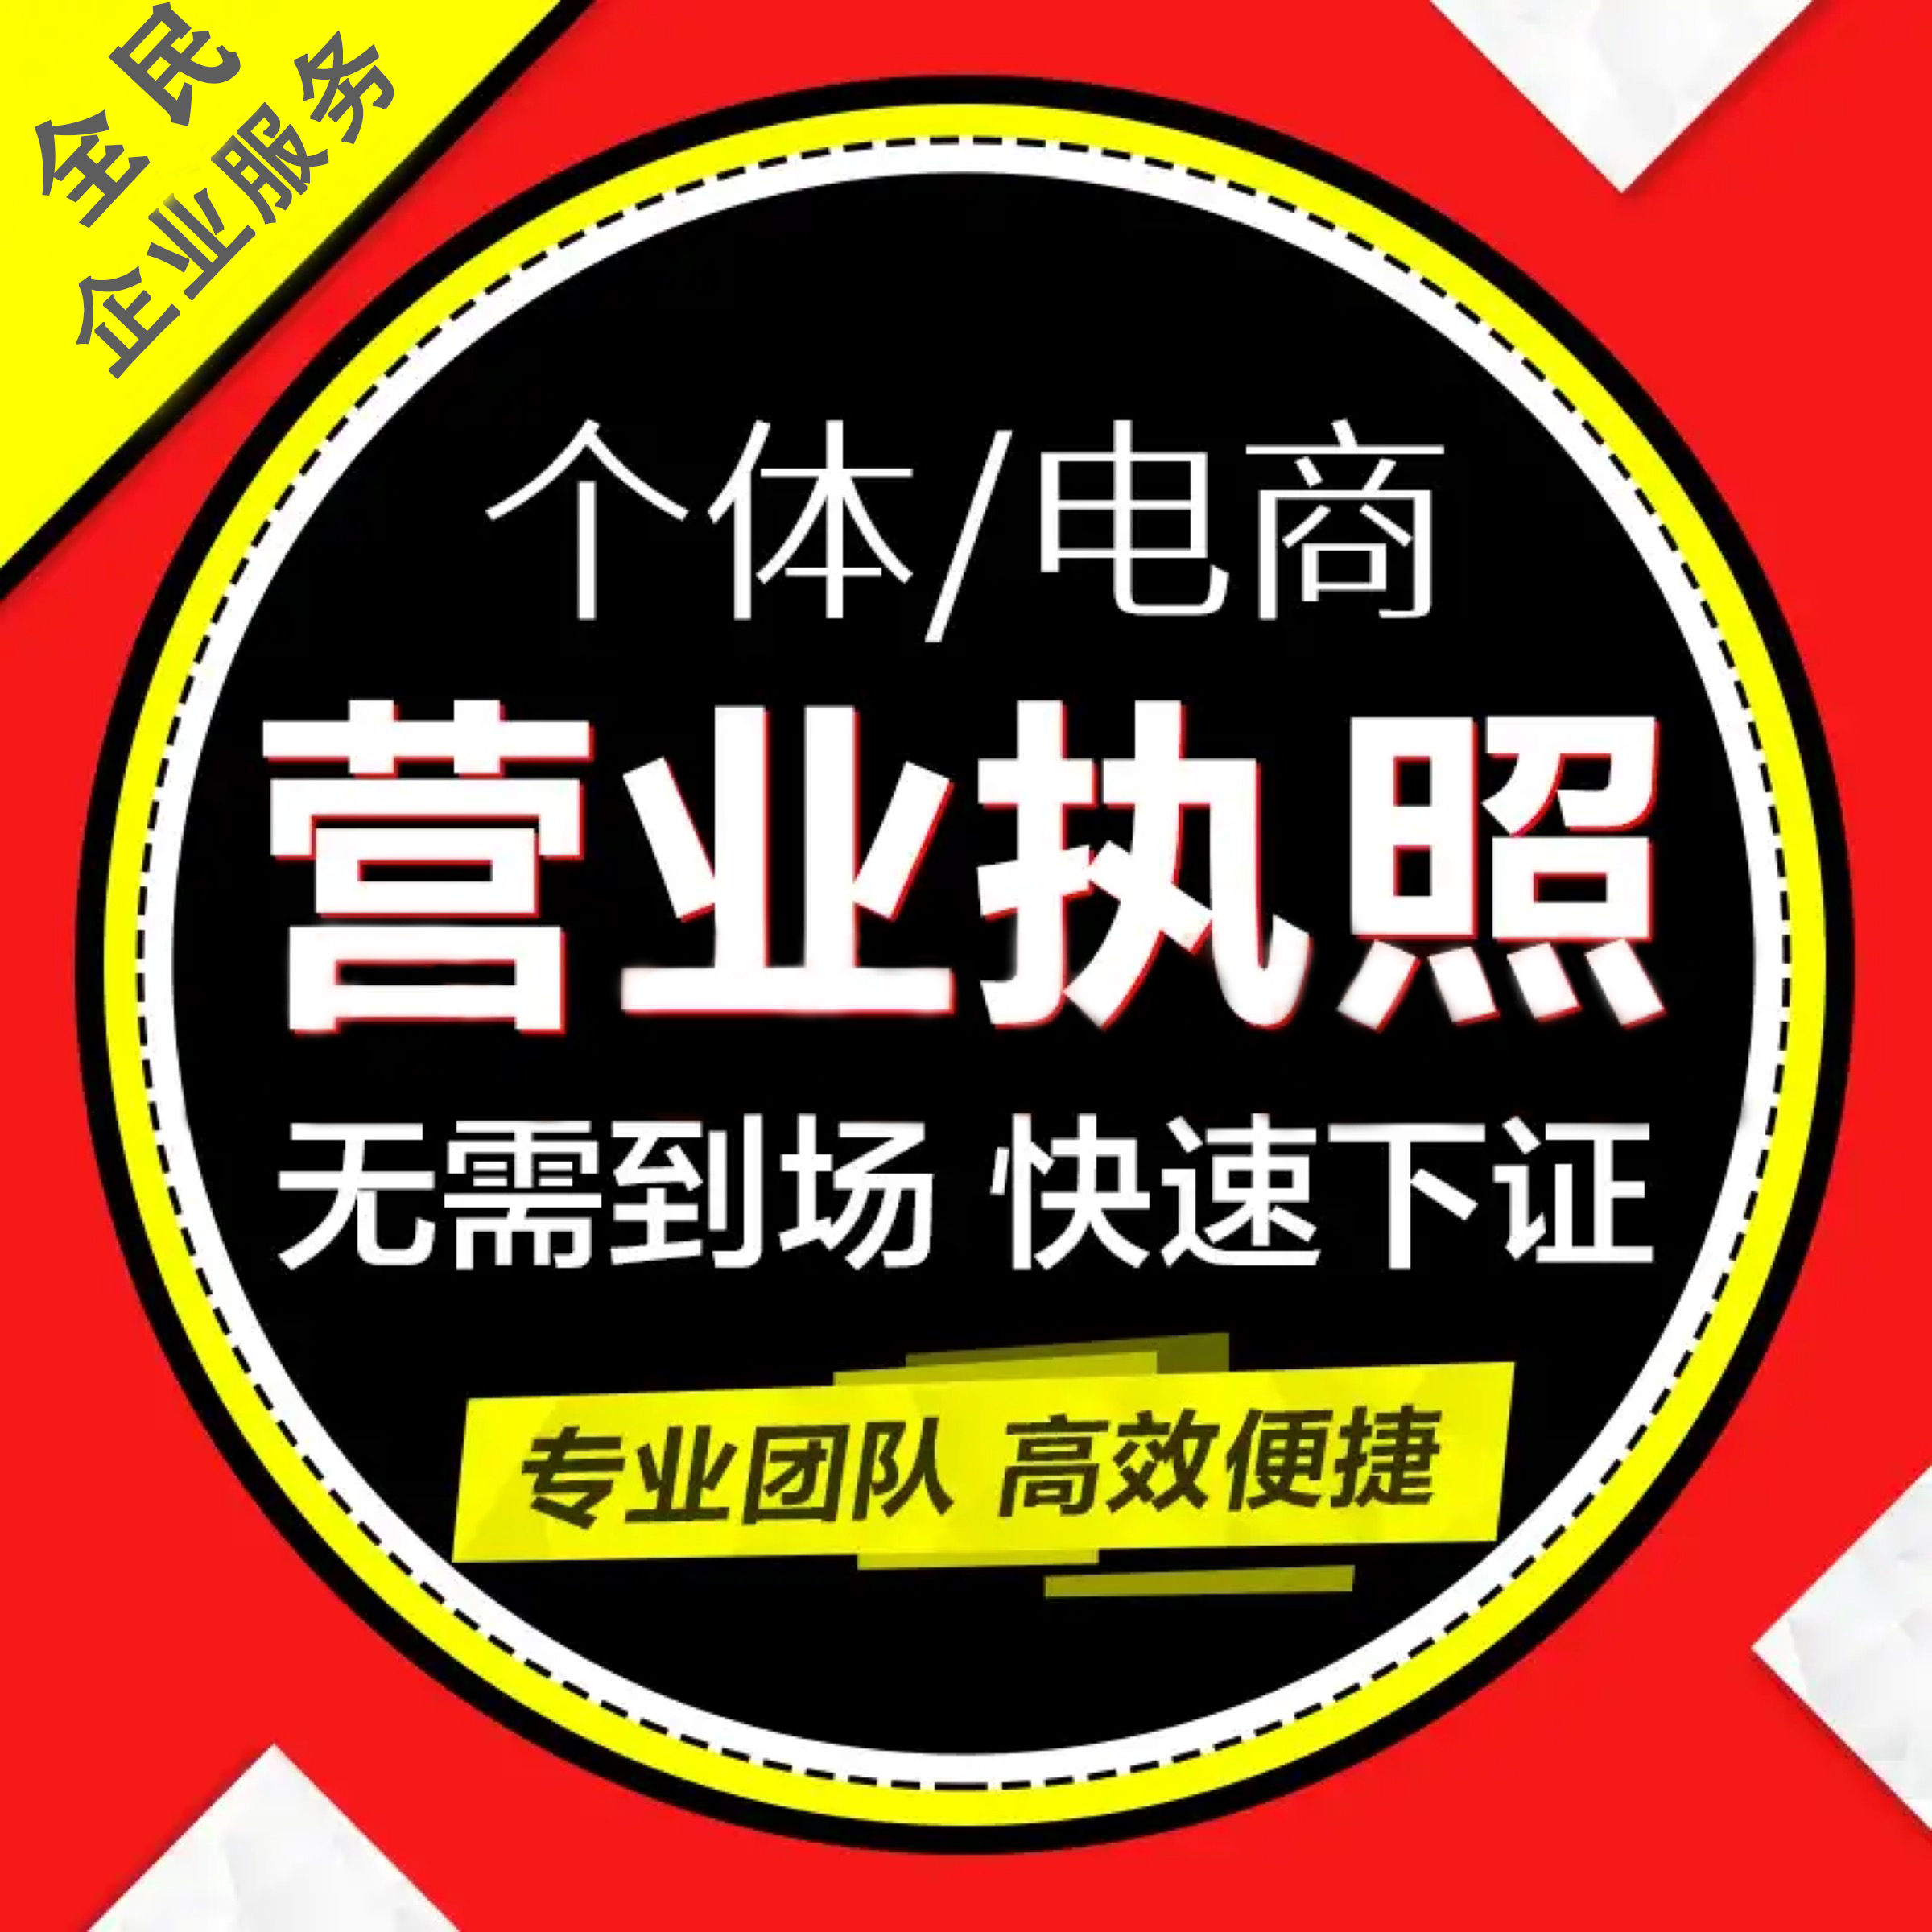 广州工商注册 电商公司注册 提供注册地址 免费核名 代理记账